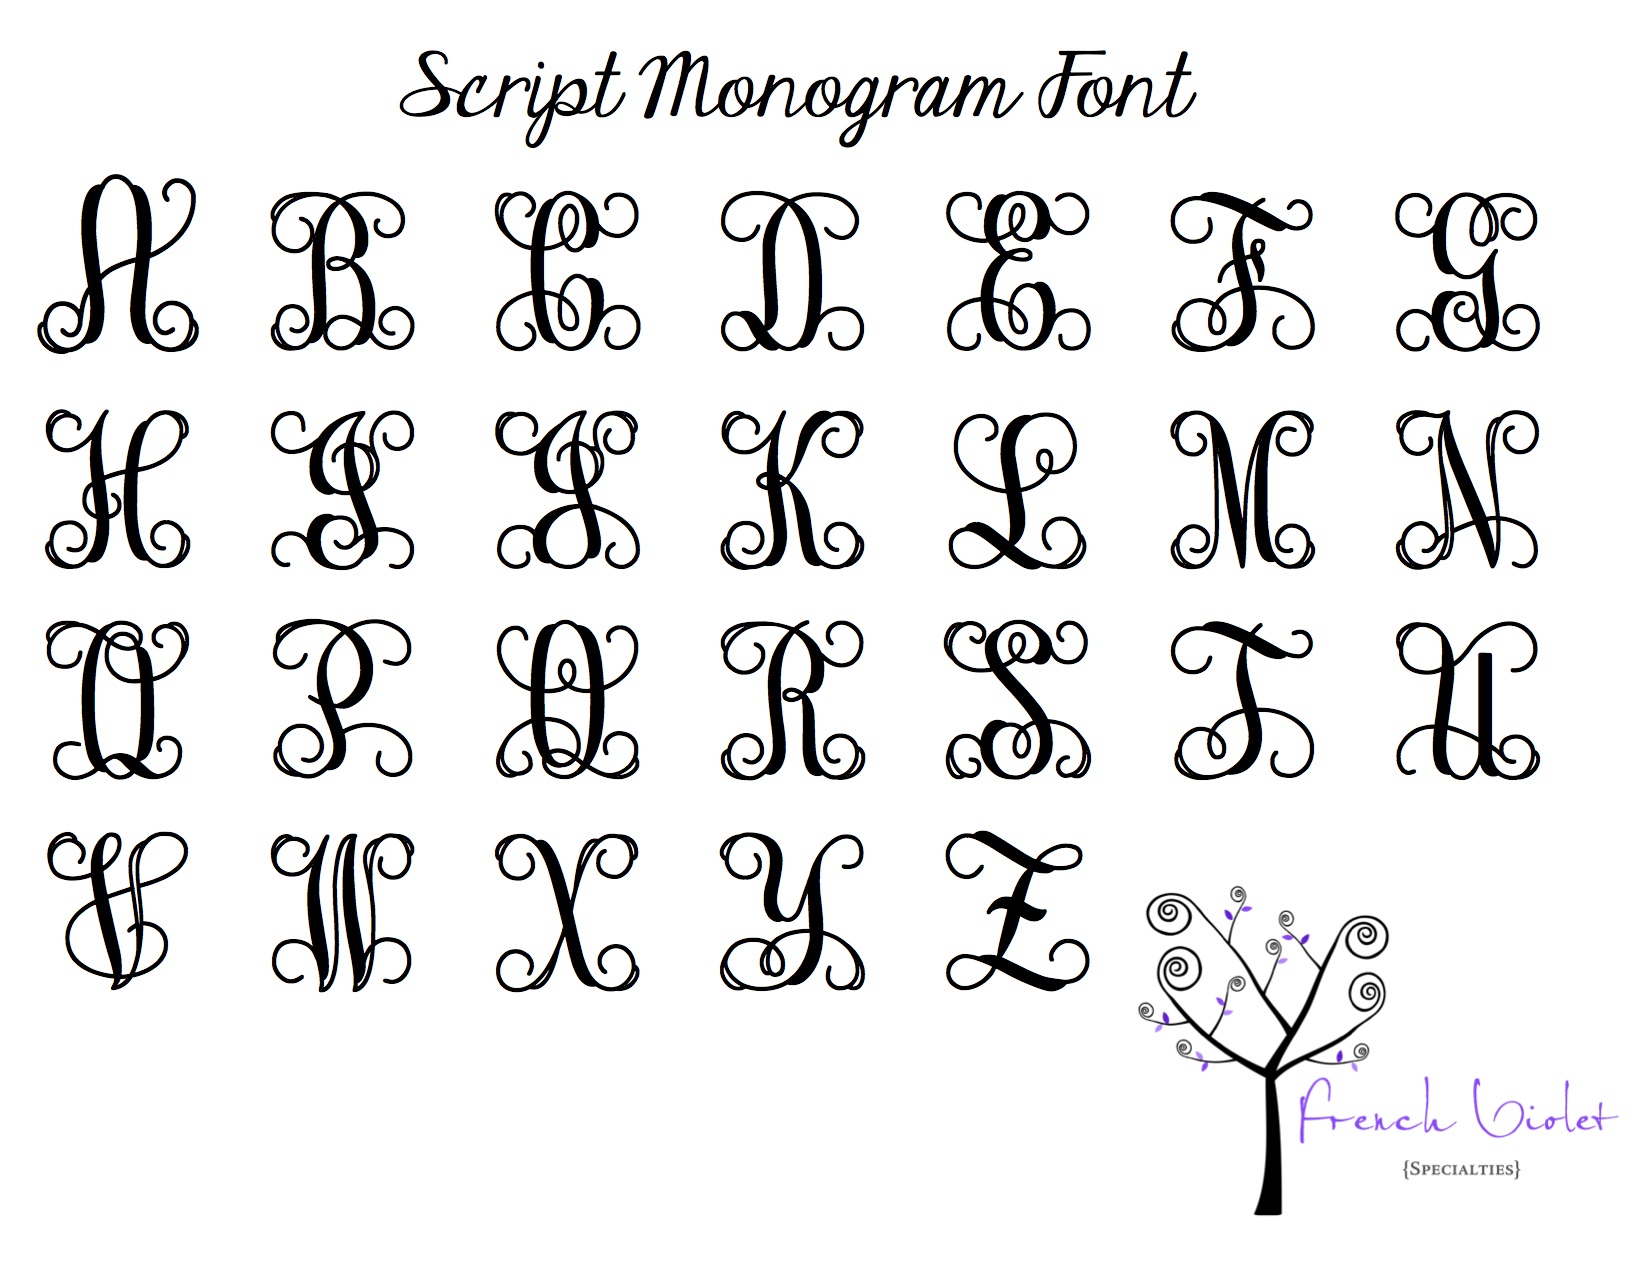 15 Monogram Script Font Images